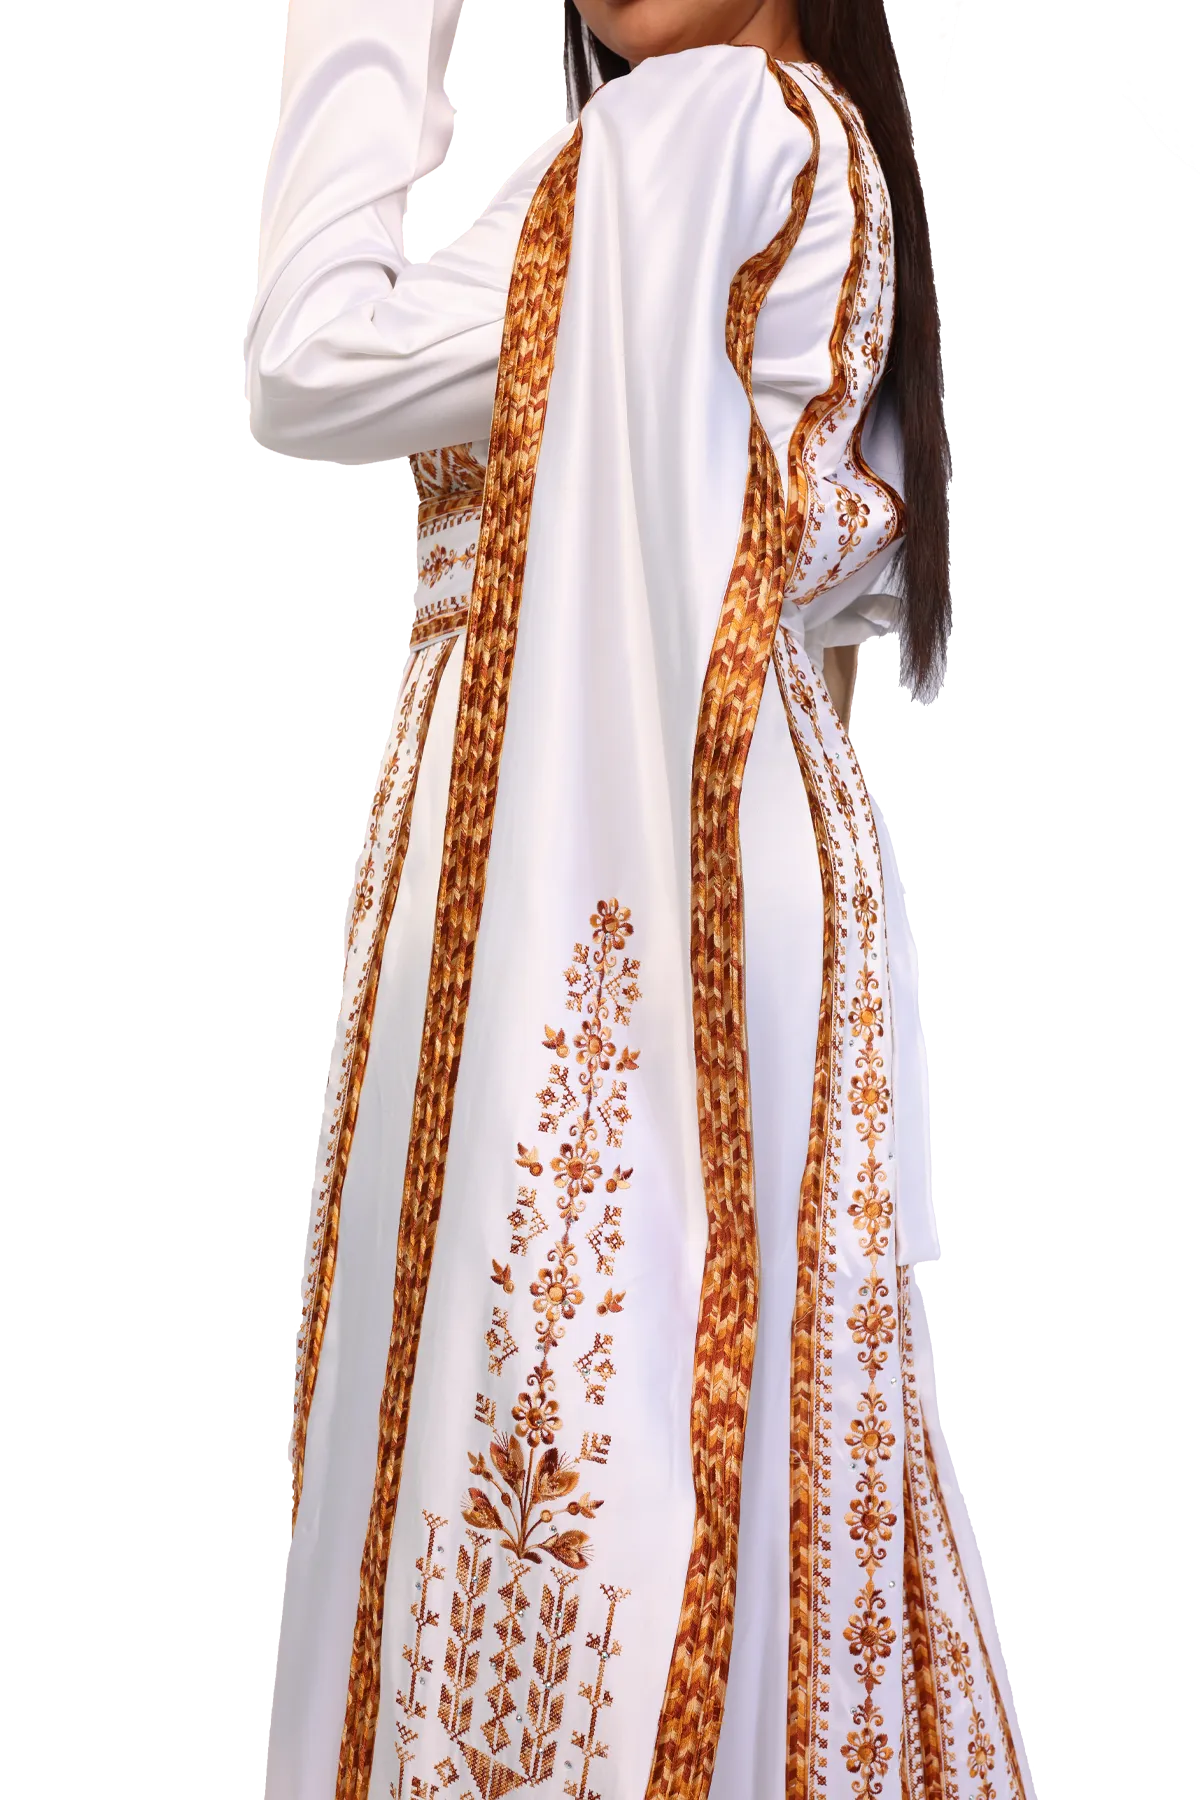 Malacca dress